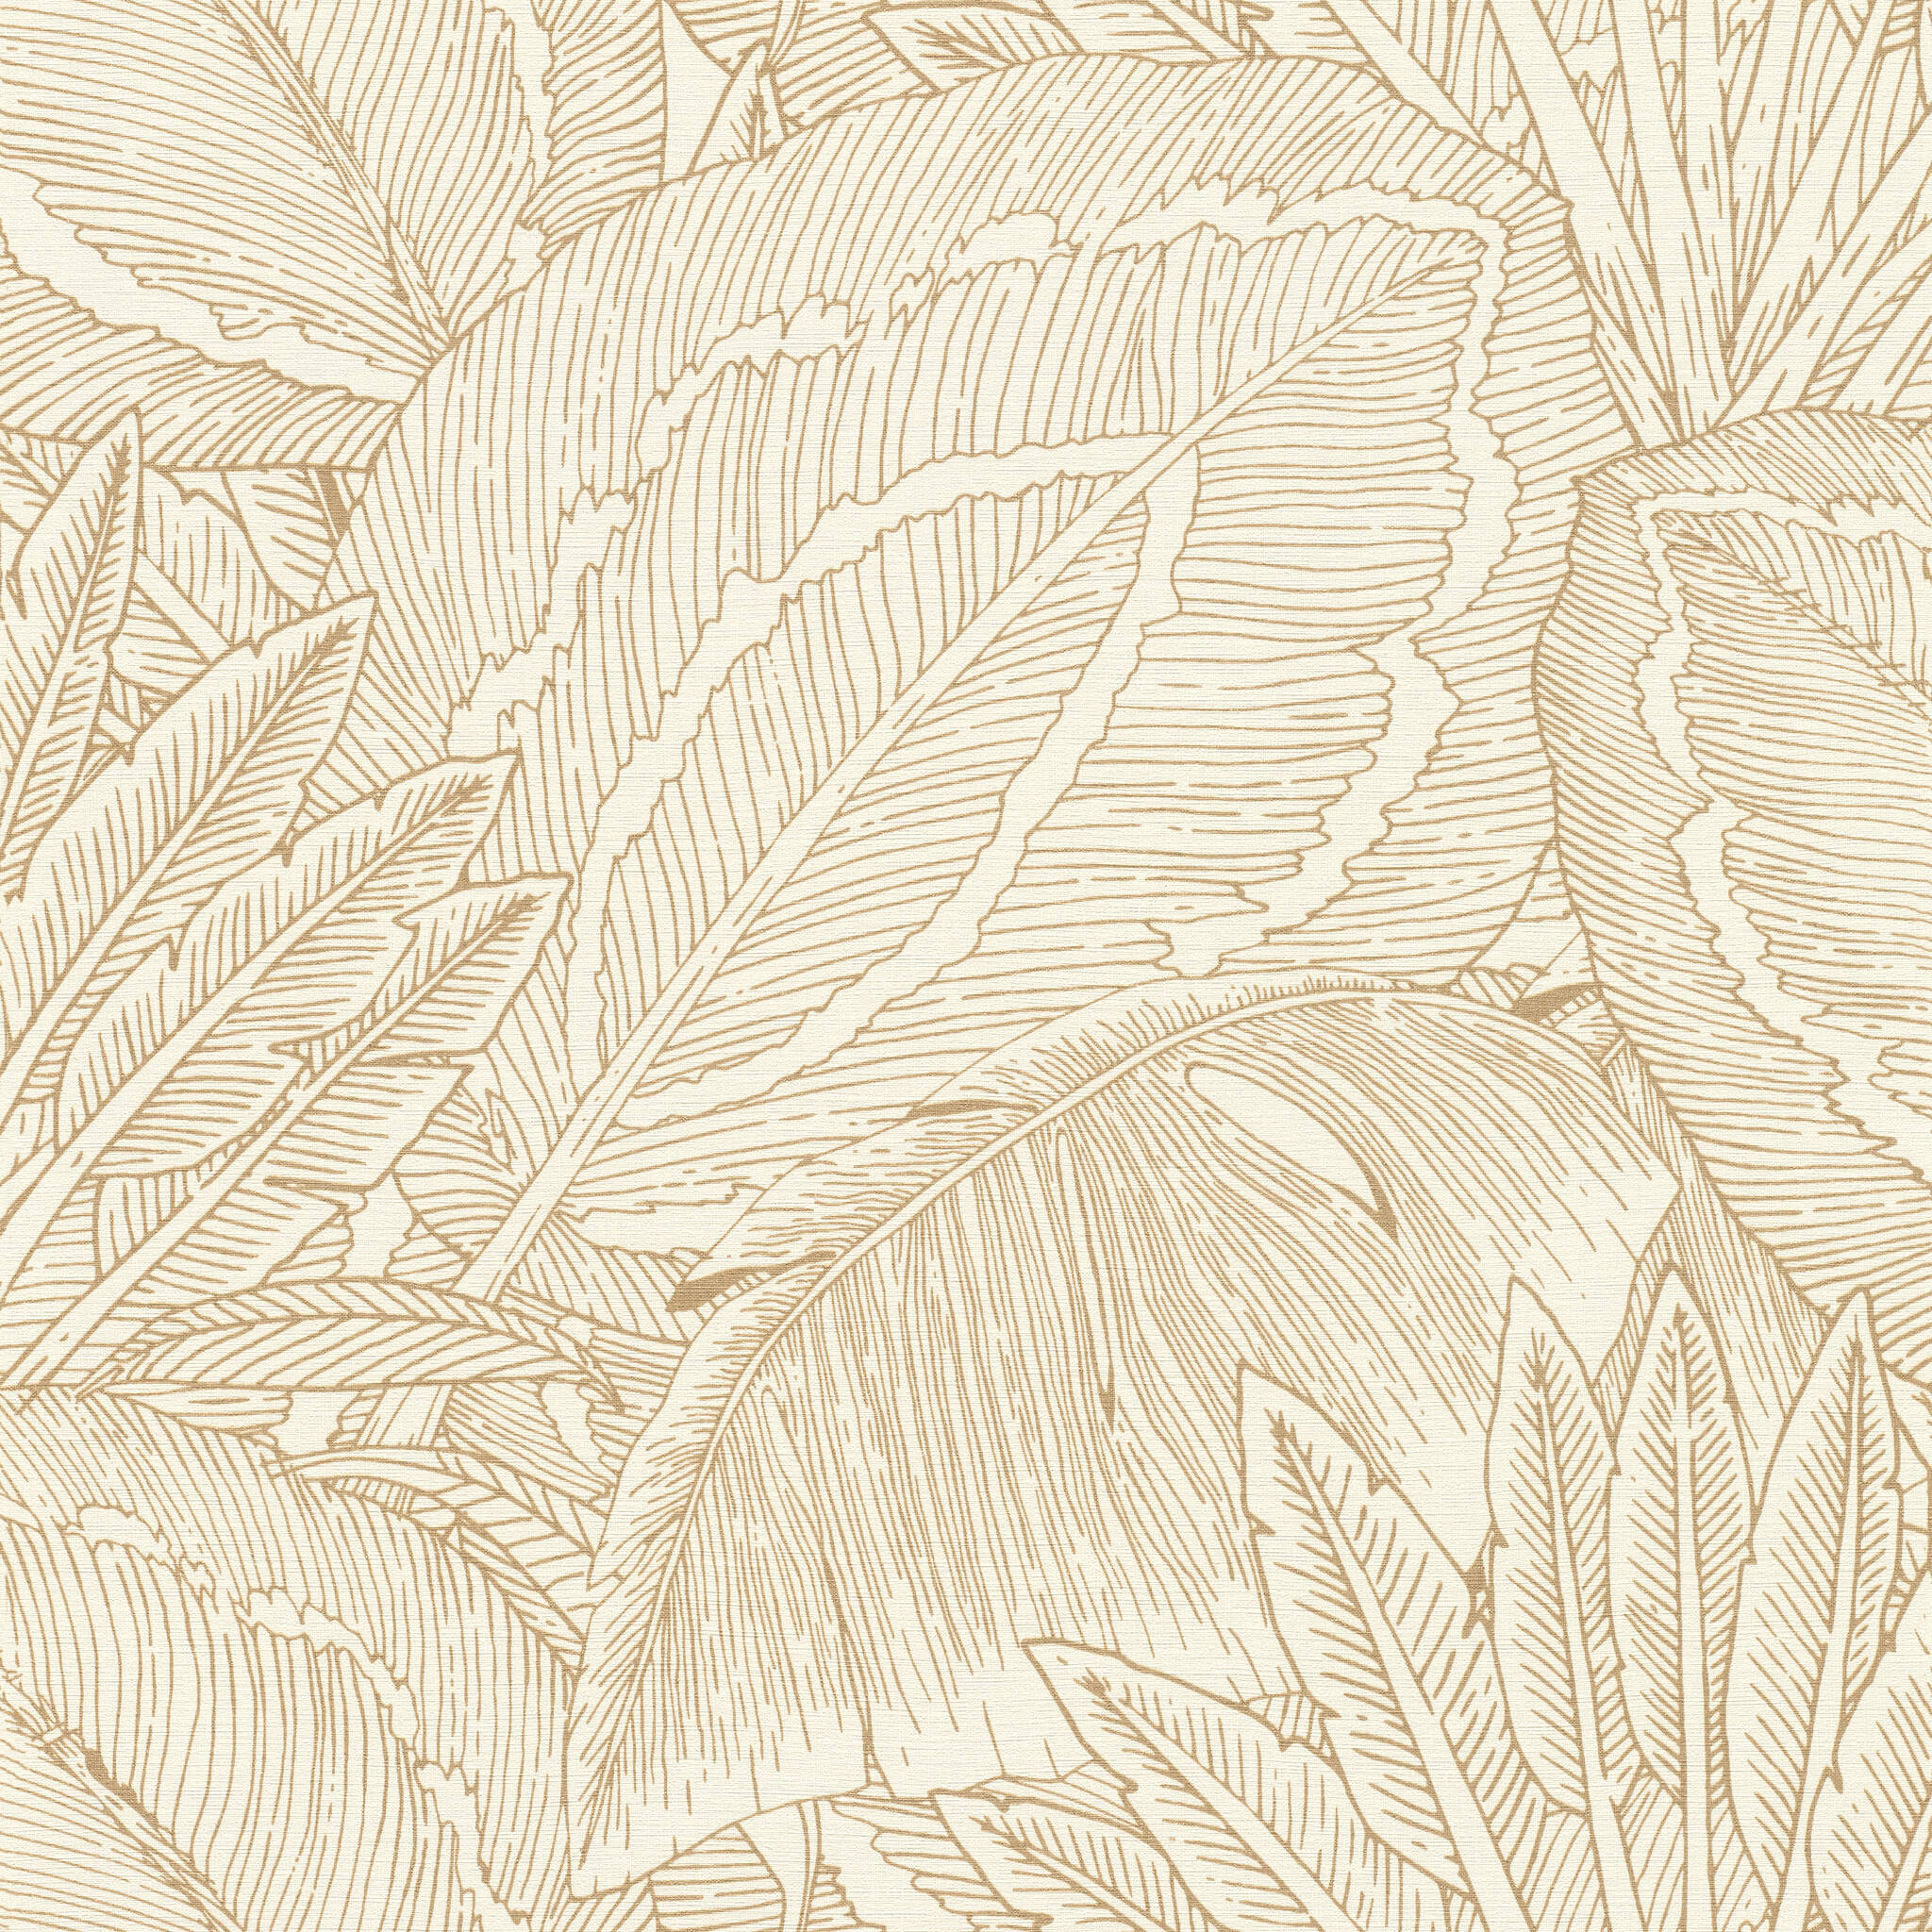  Vliestapete Palmen in Weiß und Gold 580822